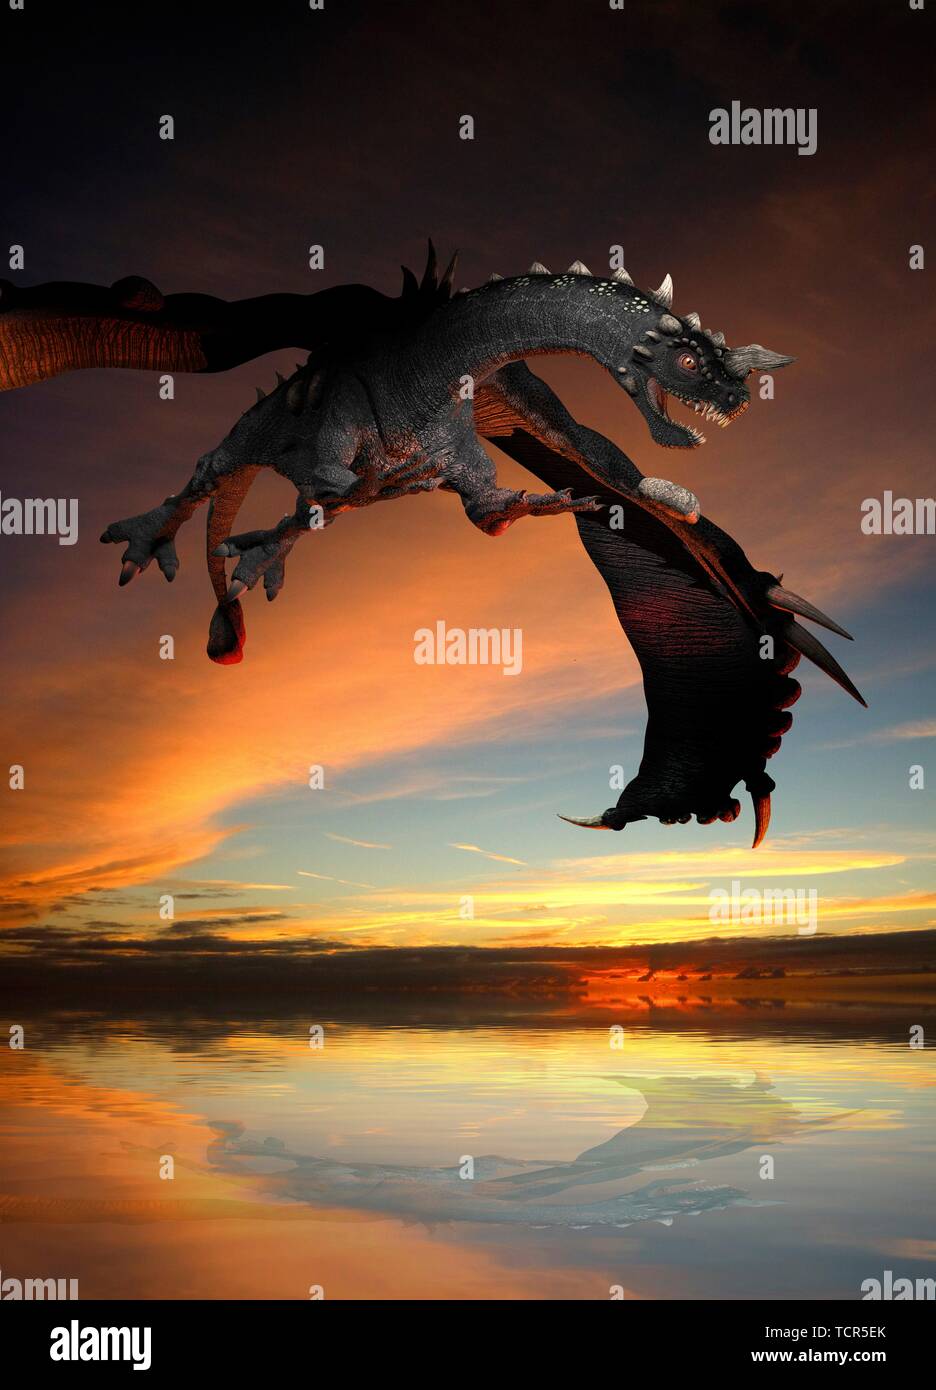 Dinosaur, illustration Stock Photo